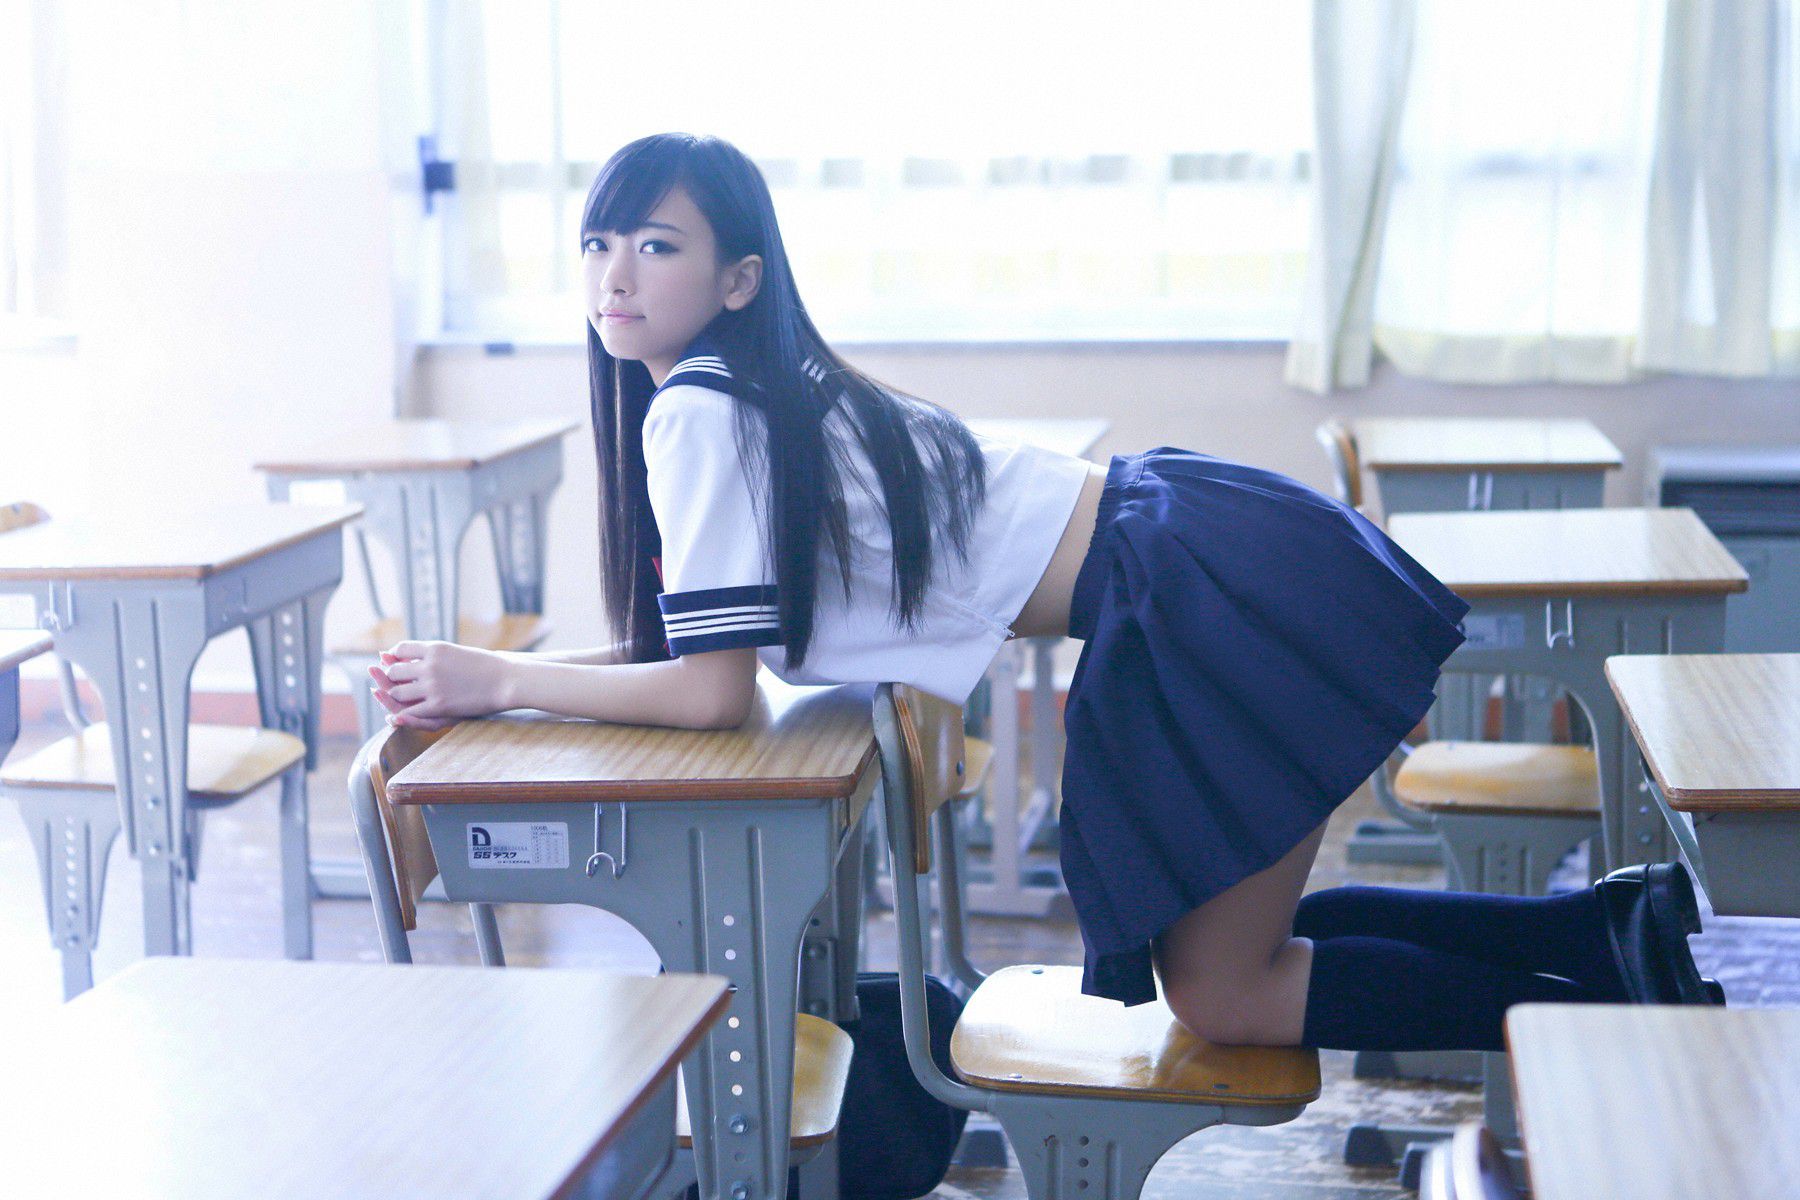 Schoolgirl after school